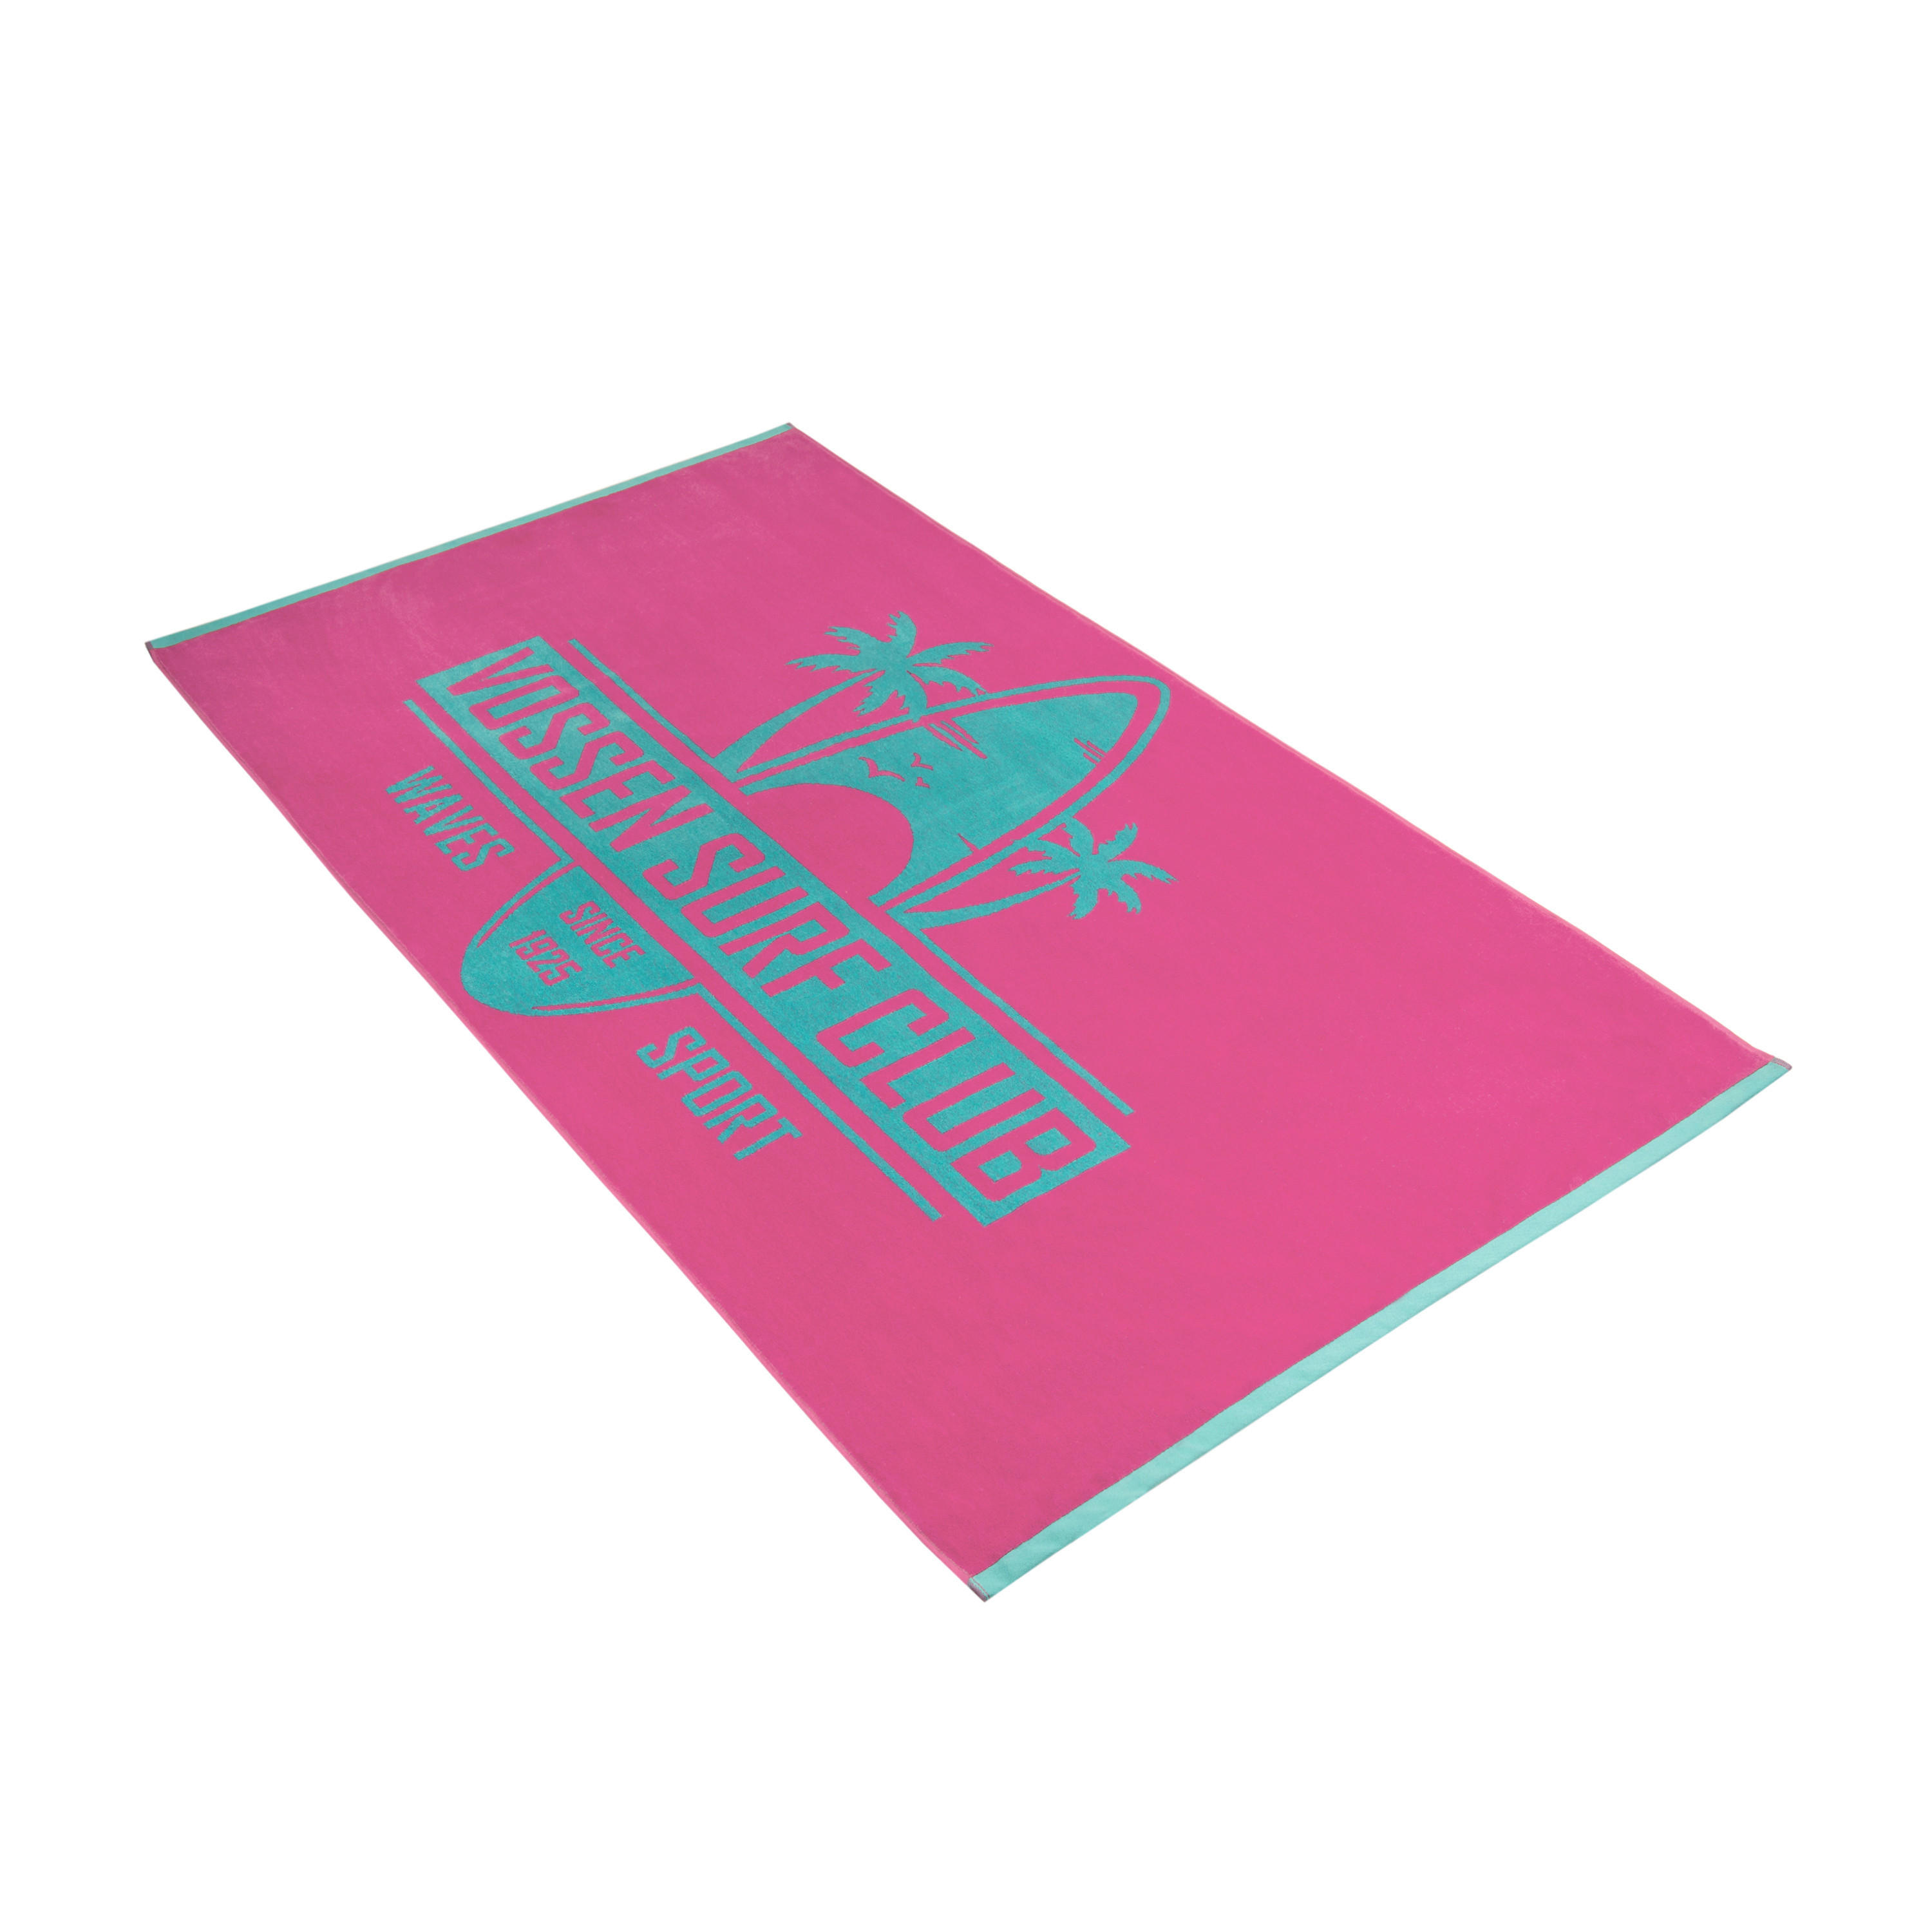 STRANDTUCH Surf Club 100/180 cm  - Pink, KONVENTIONELL, Textil (100/180cm) - Vossen